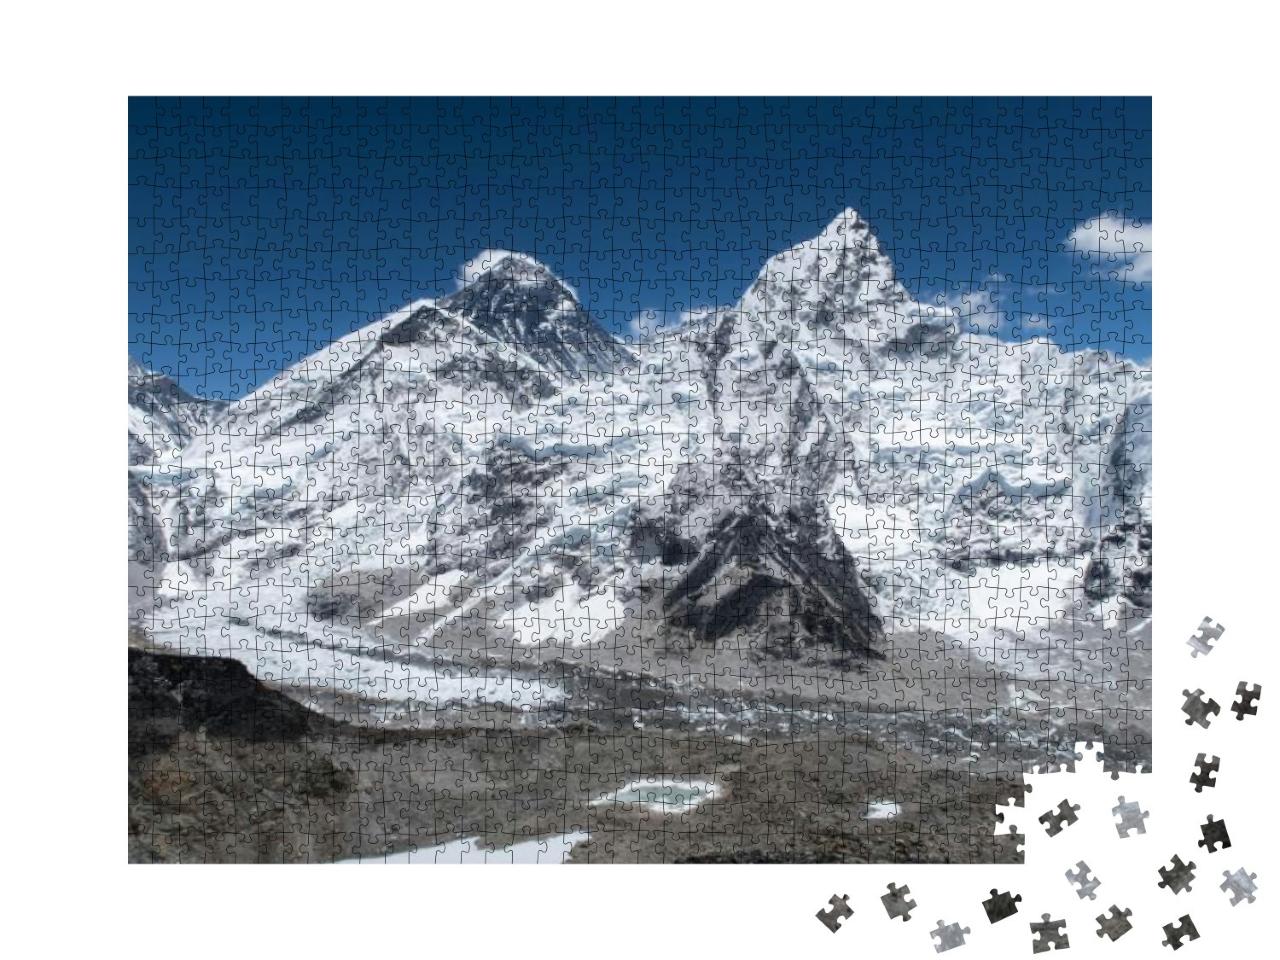 Puzzle 1000 Teile „Atemberaubend: Der Blick vom Kala Patthar auf den Mount Everest“